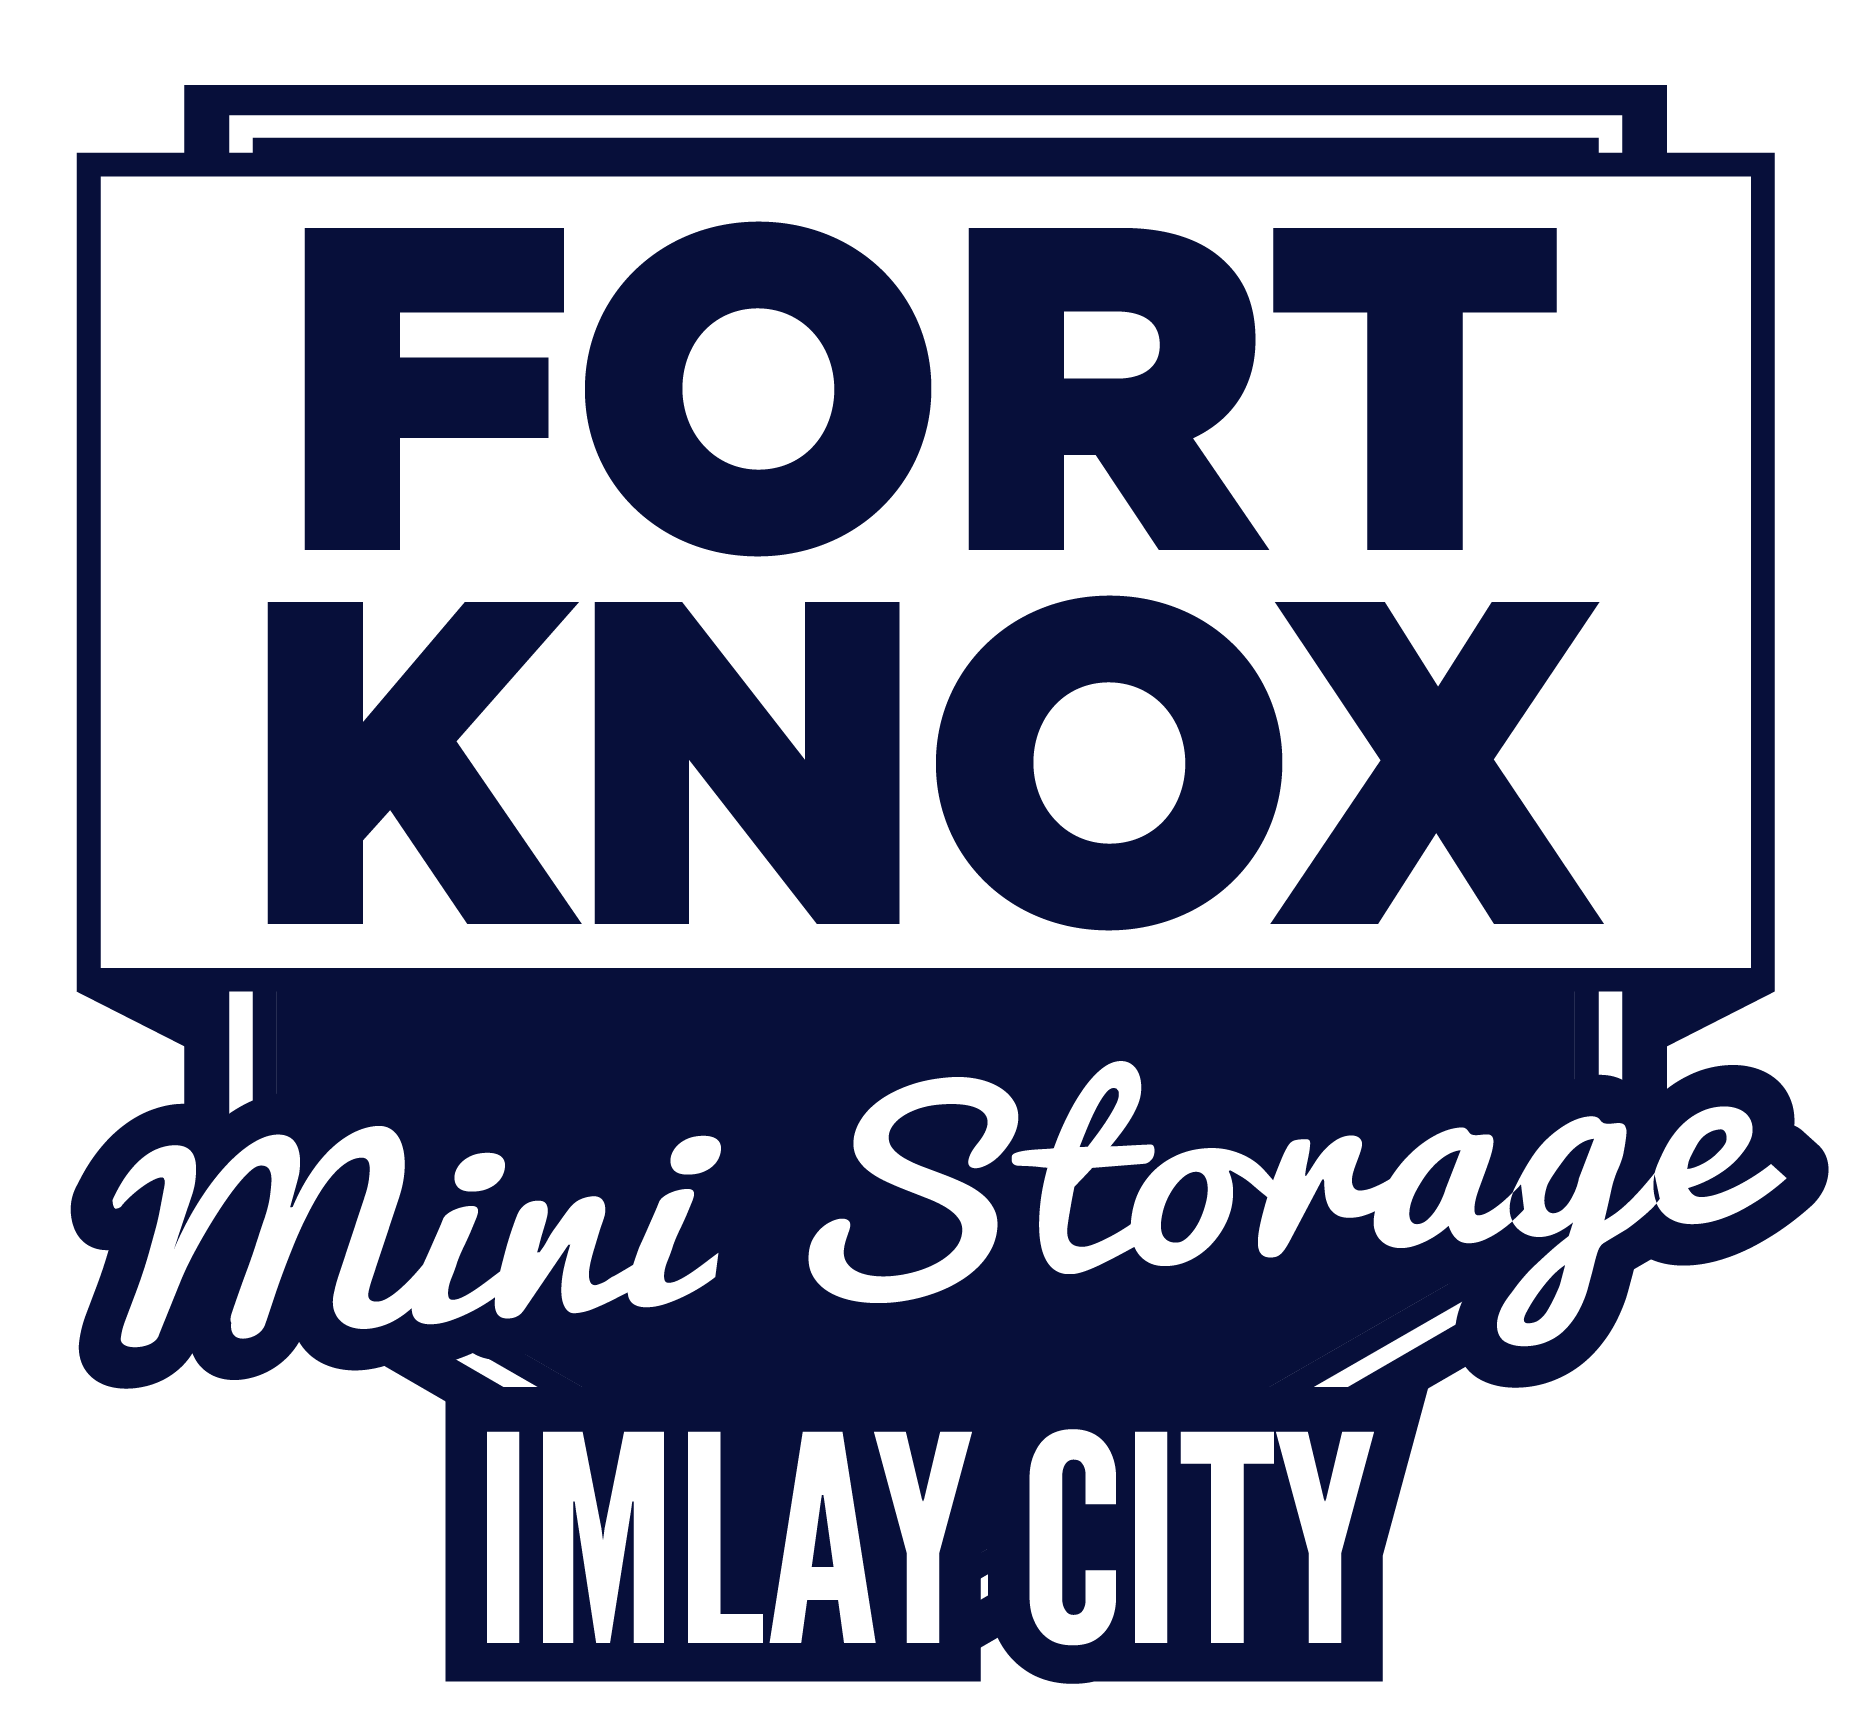 Fort Knox Imlay City